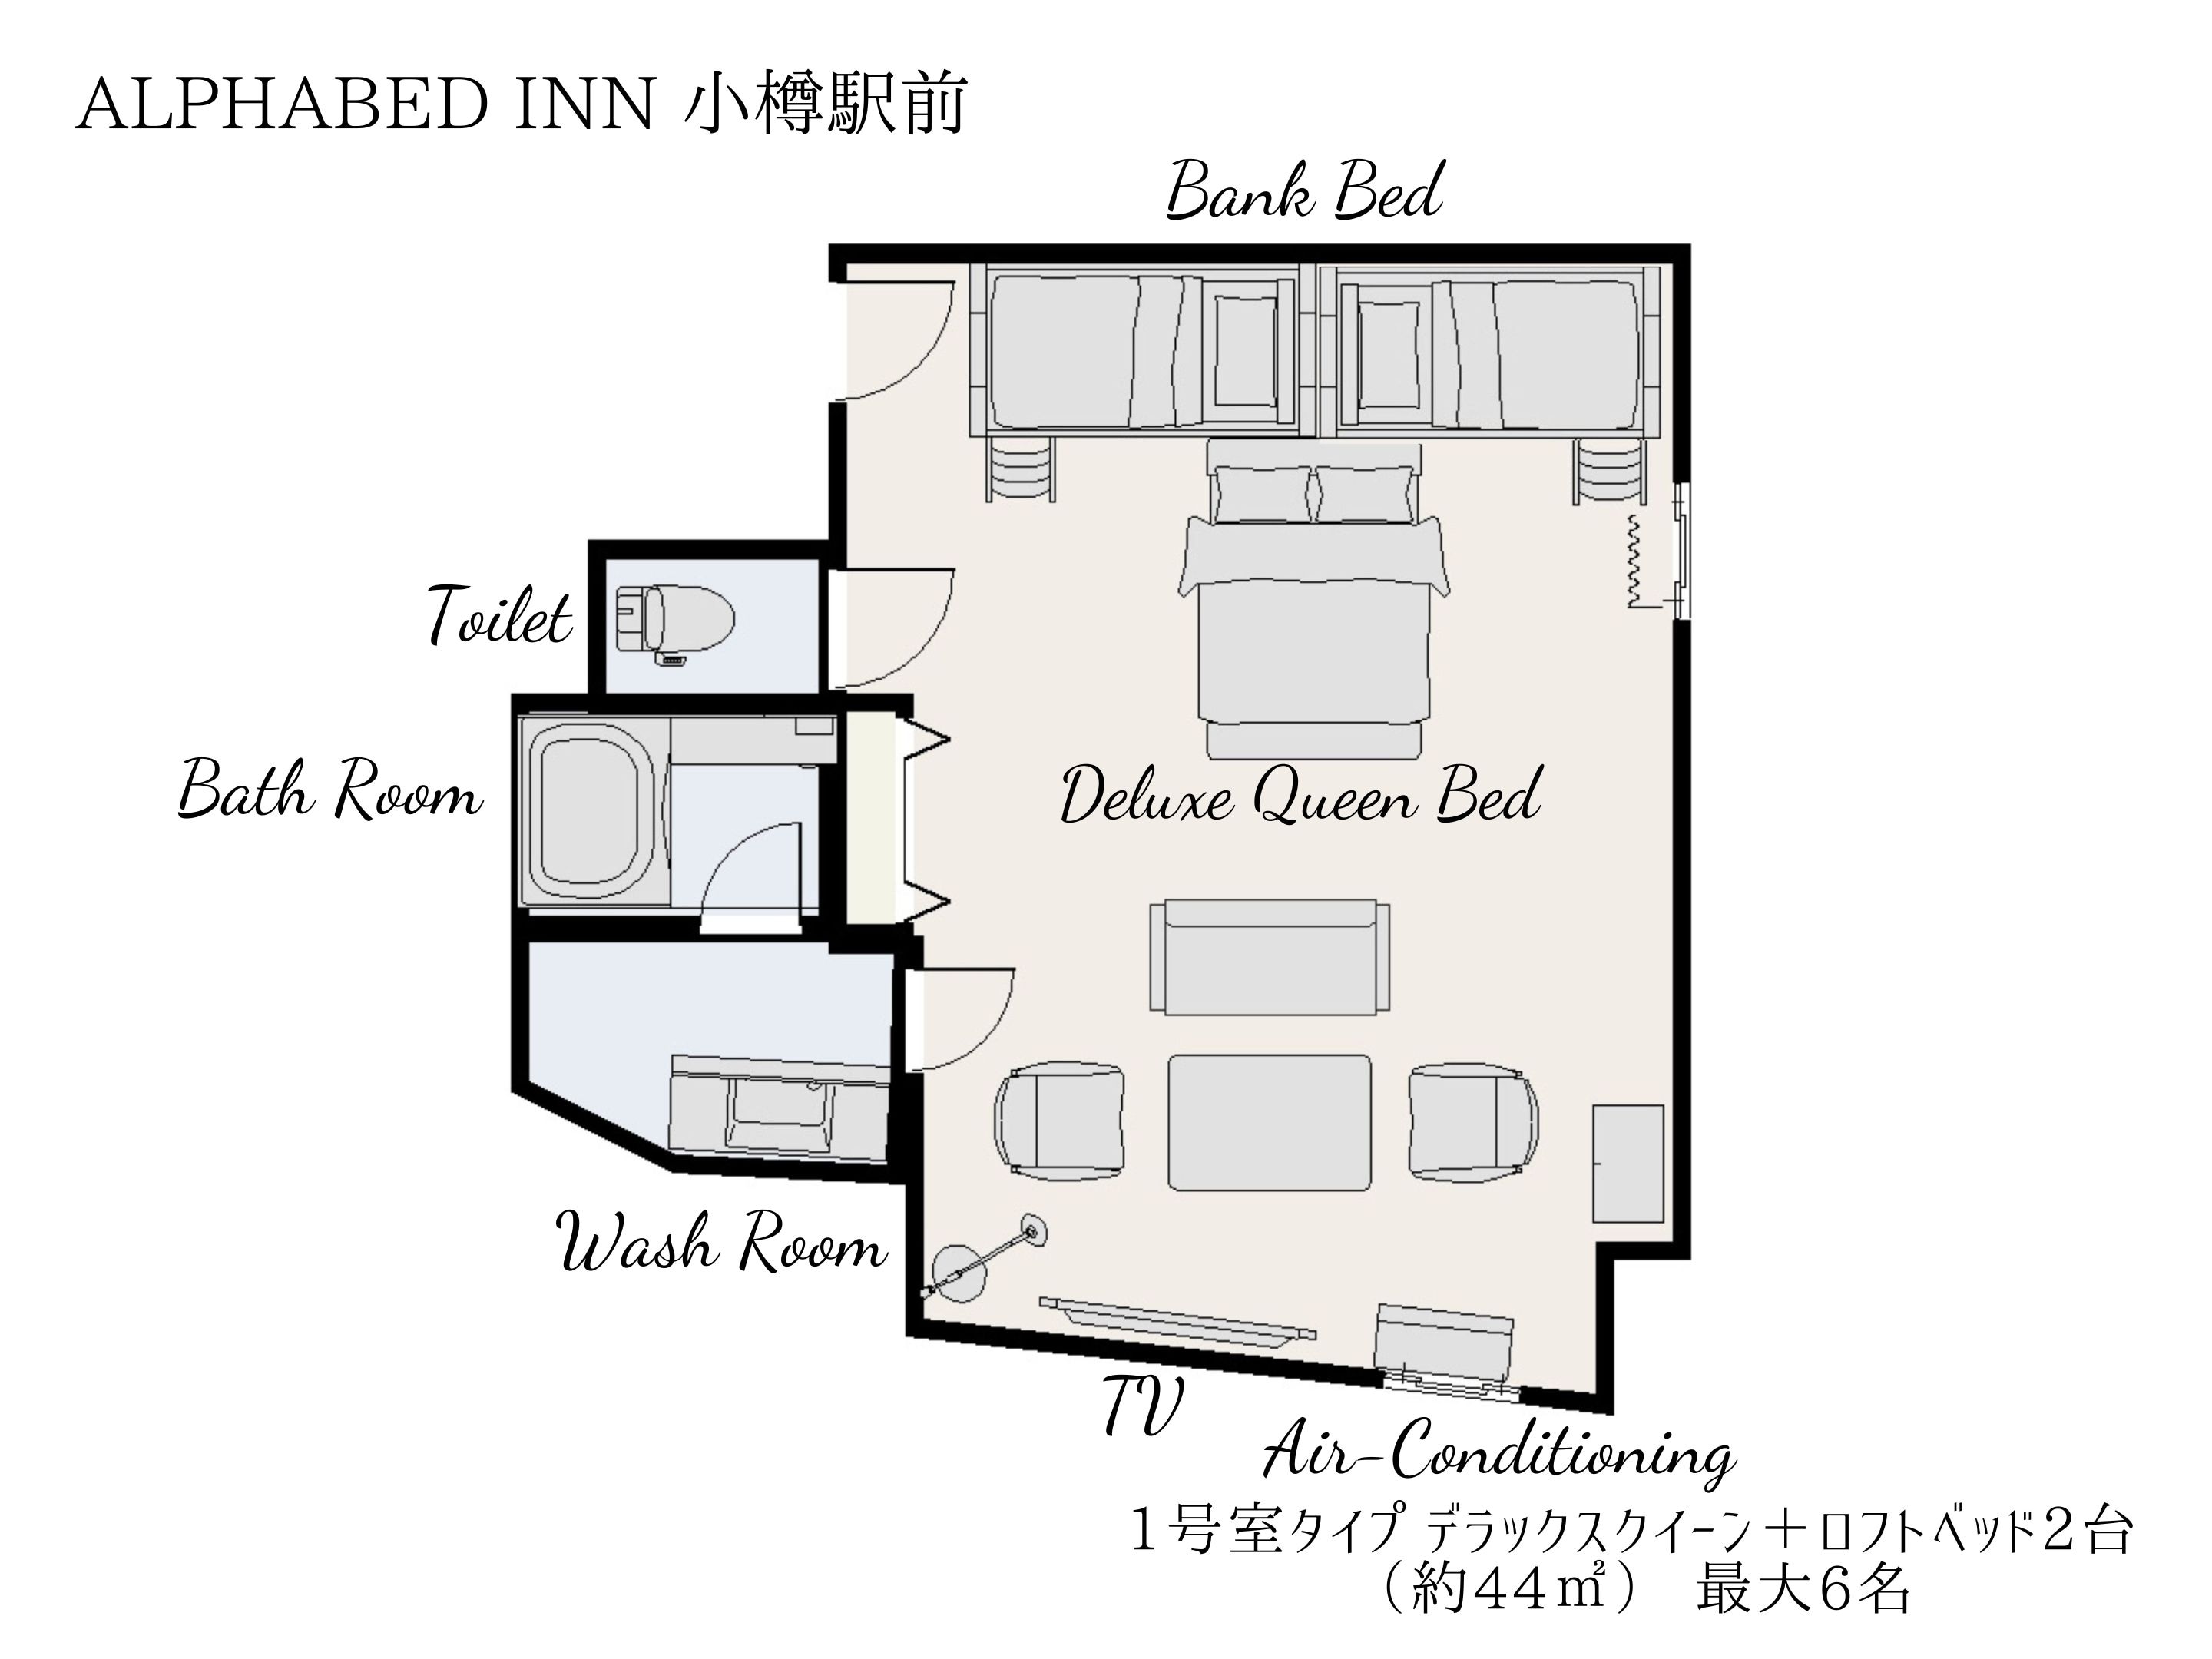 รูปแบบห้อง [ดีลักซ์ควีน + 2 เตียงใต้หลังคา (ประมาณ 44㎡) สำหรับ 6 ท่าน]